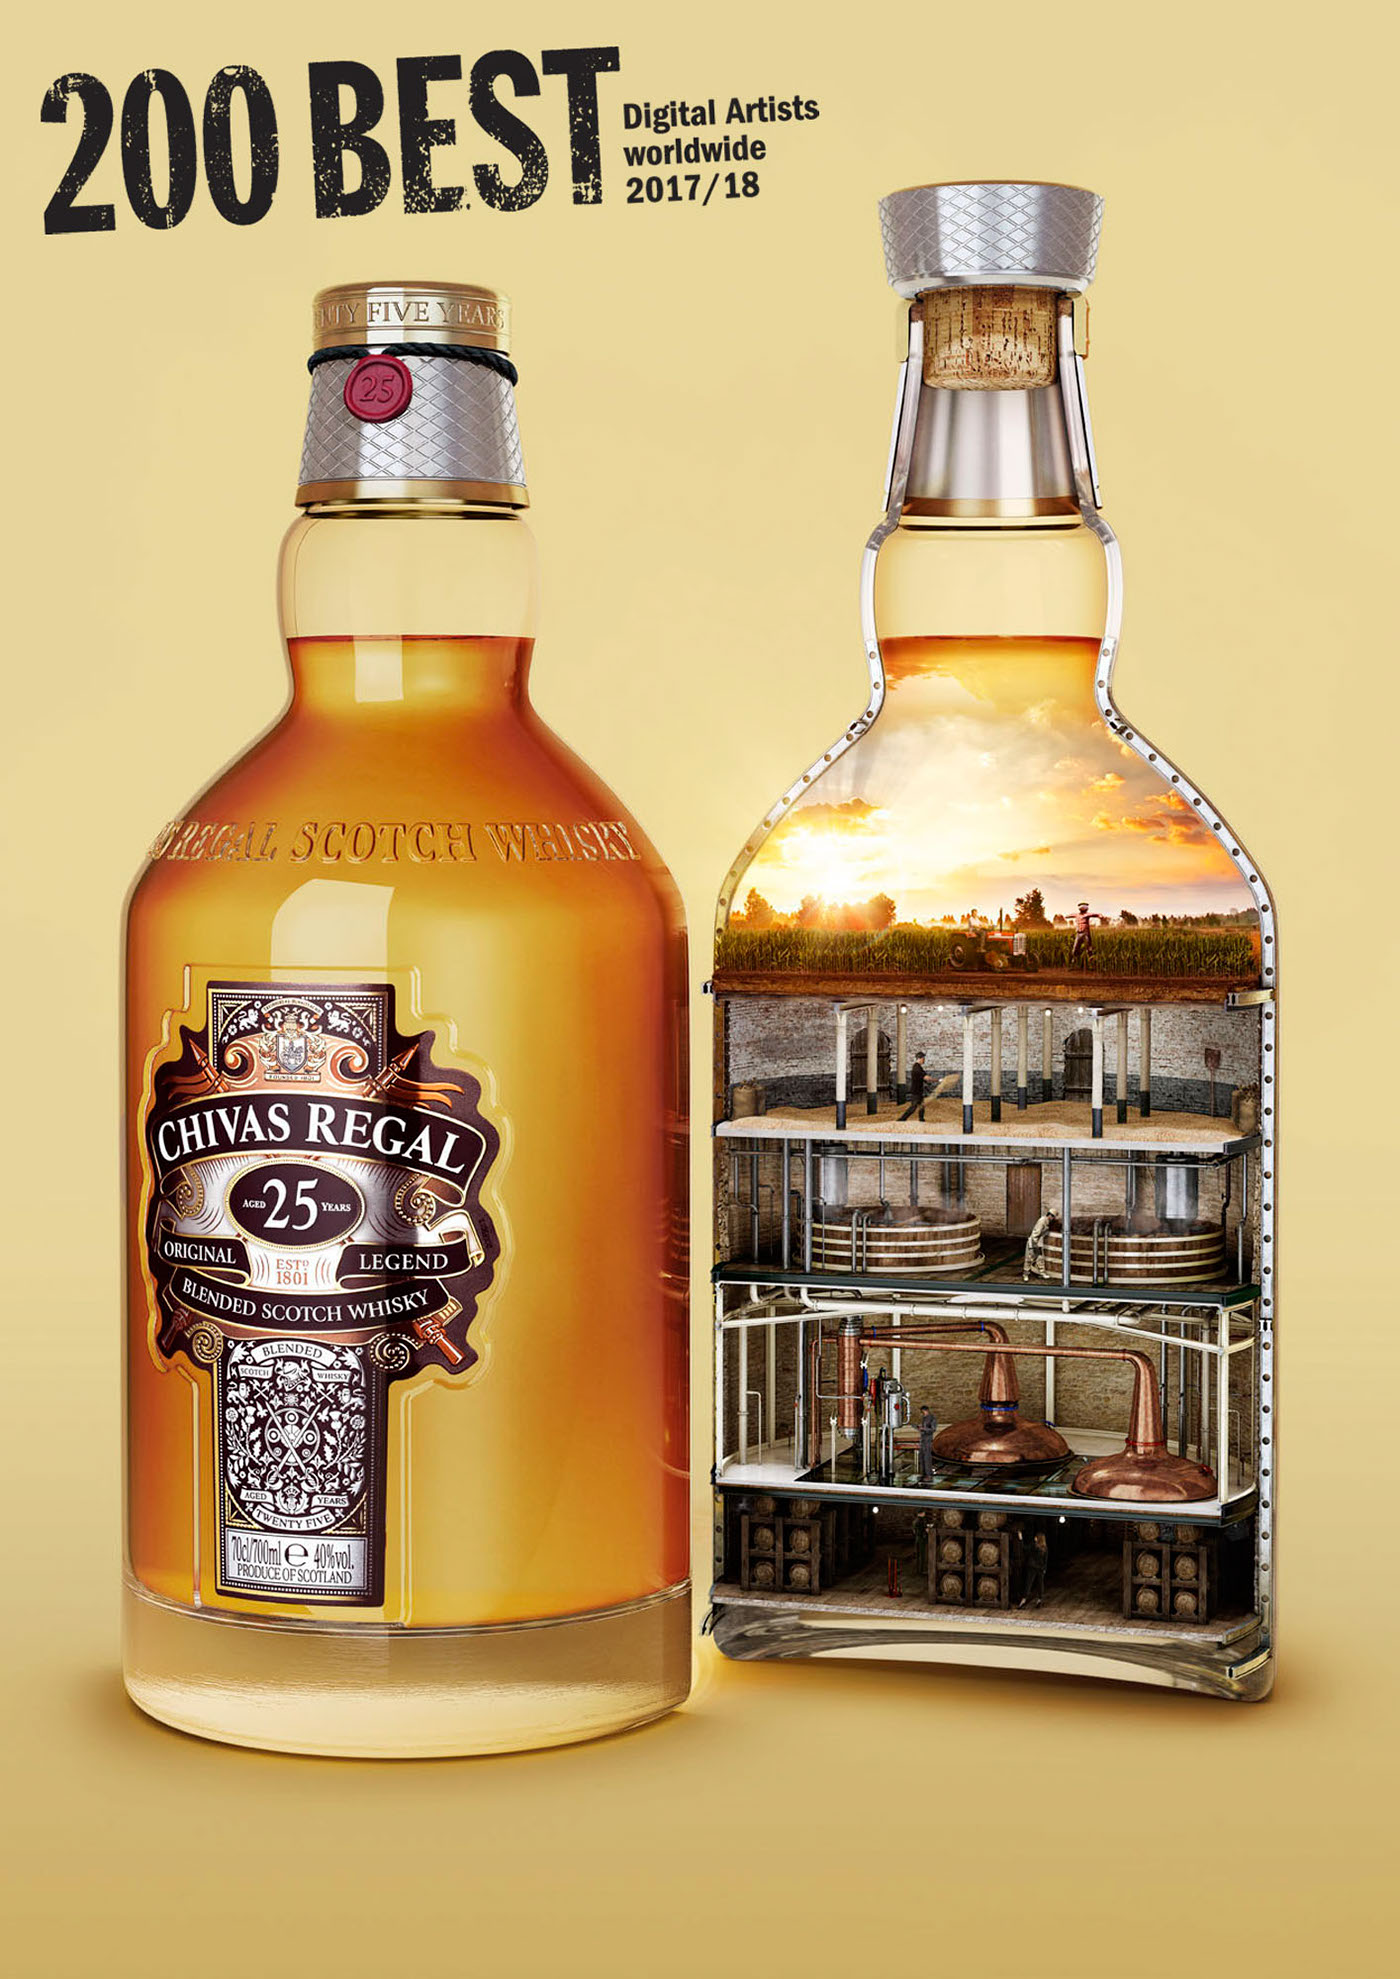 chivas regal bottle drink alcohol CGI 3D glass Production cross-section process print concept design